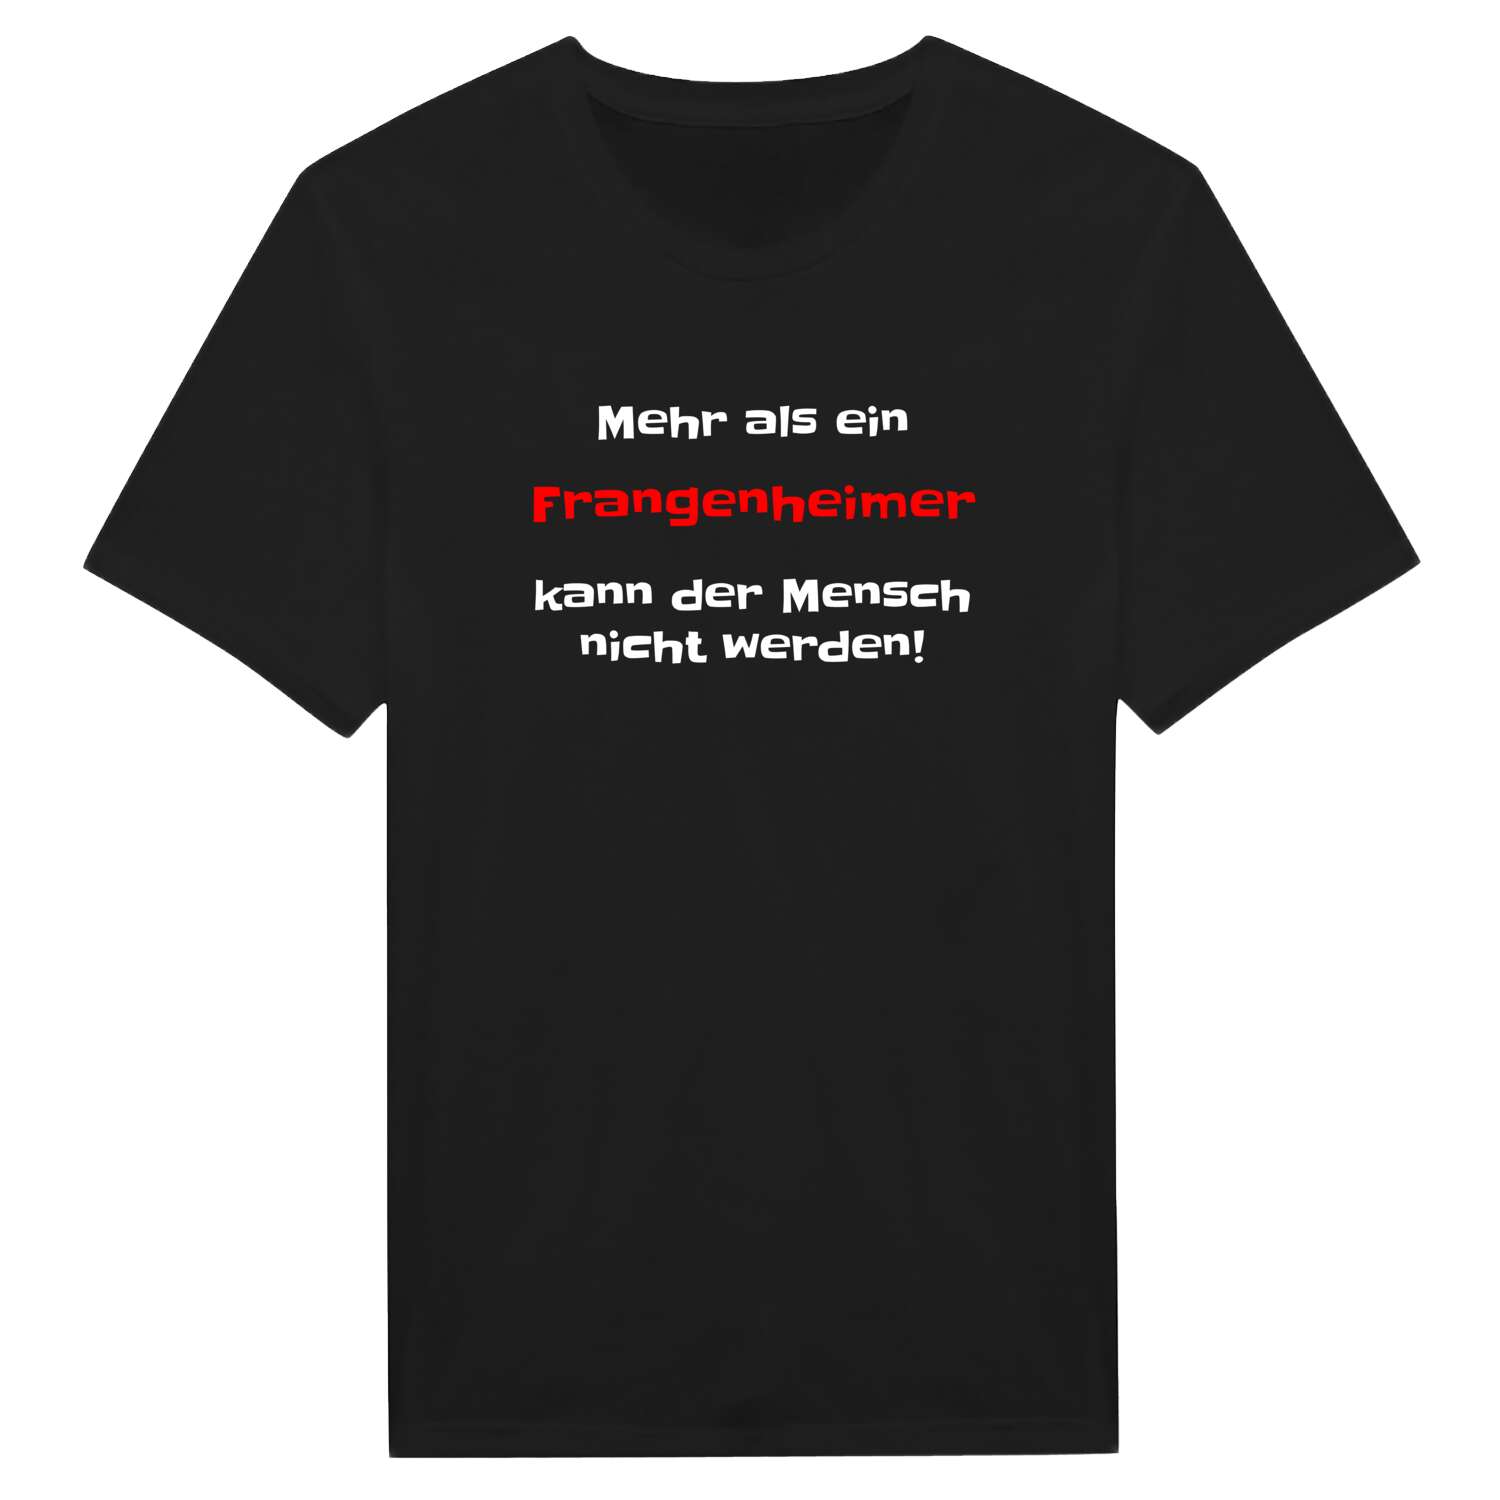 Frangenheim T-Shirt »Mehr als ein«